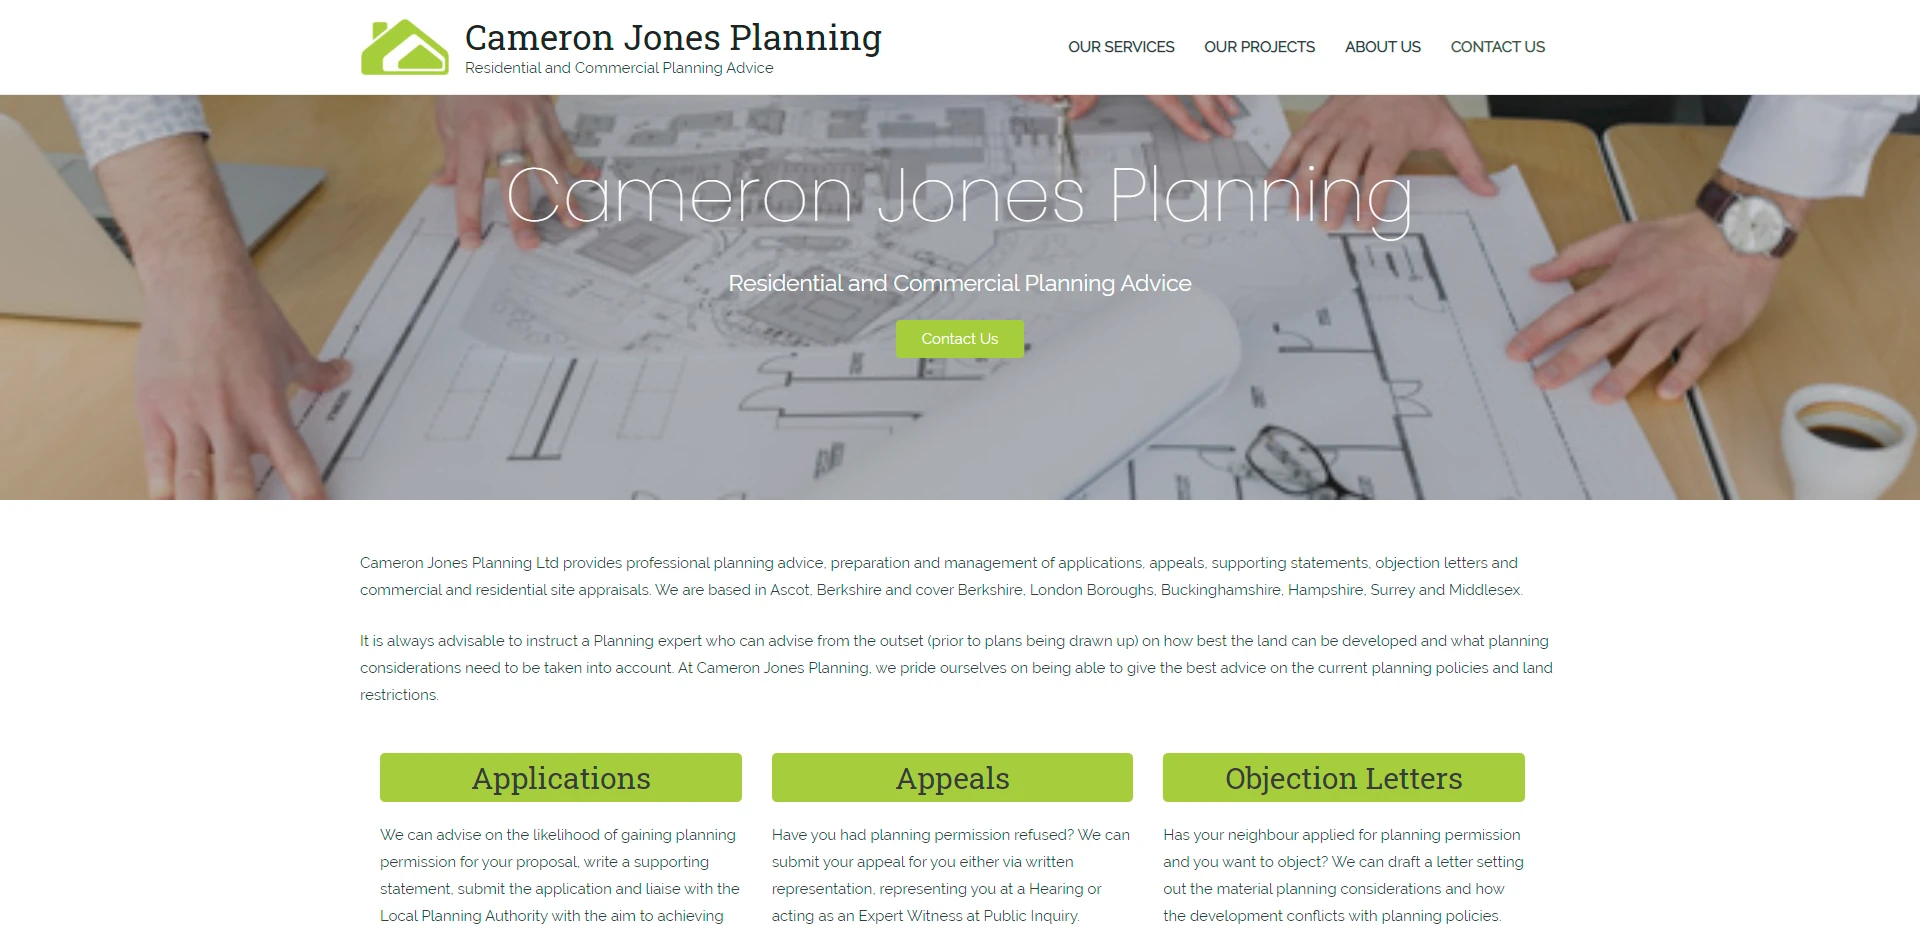 Cameron Jones Planning